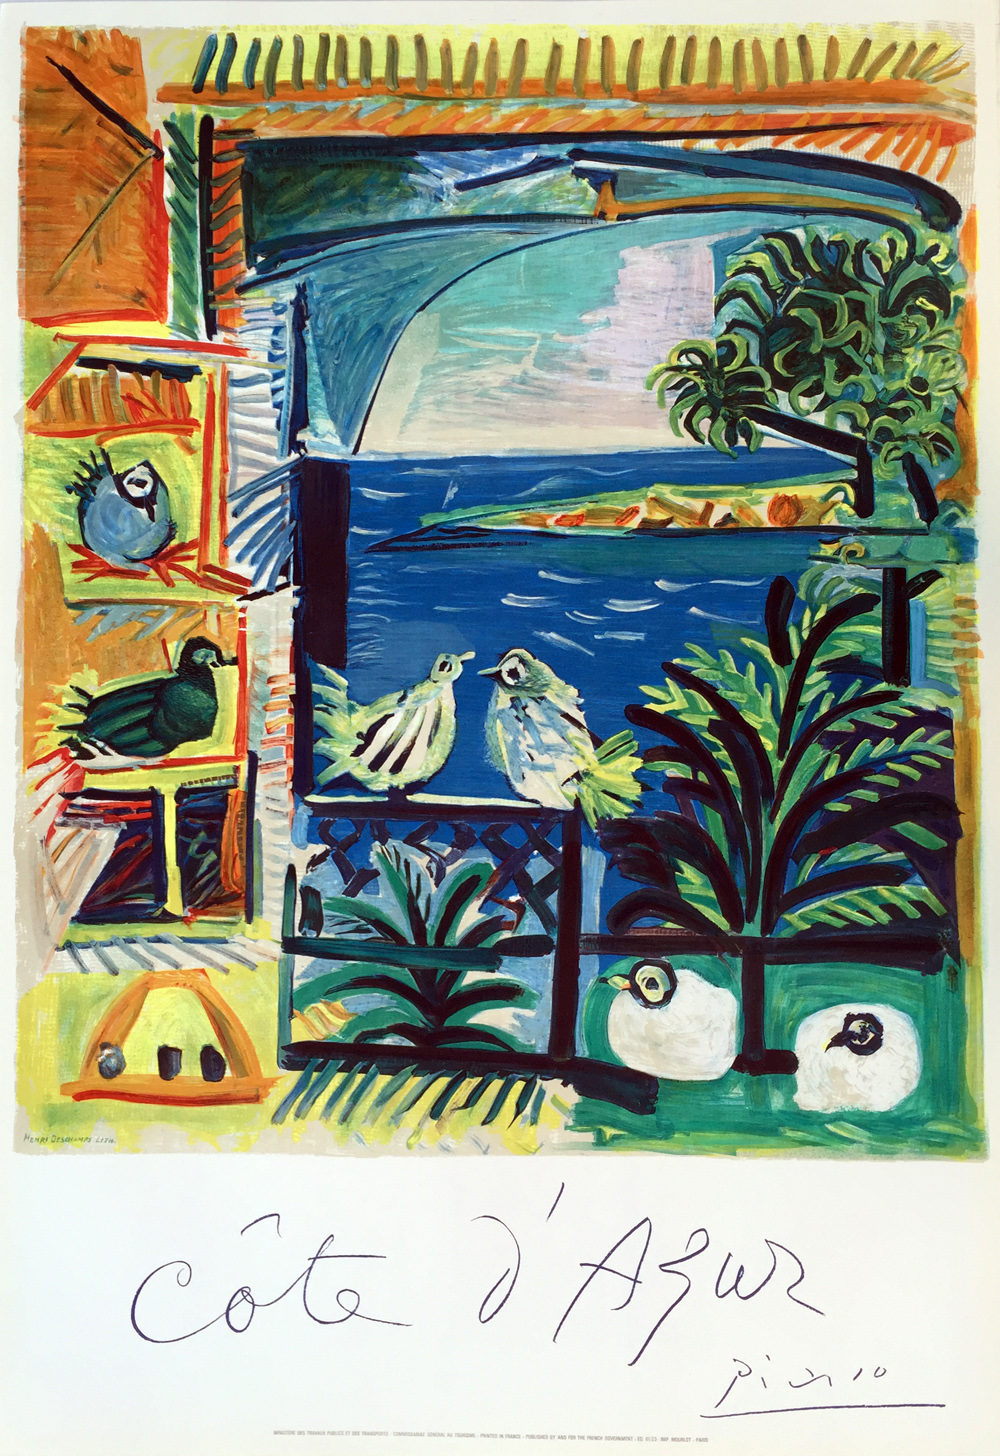 Pablo Picasso Cote Azur Lithograph Poster